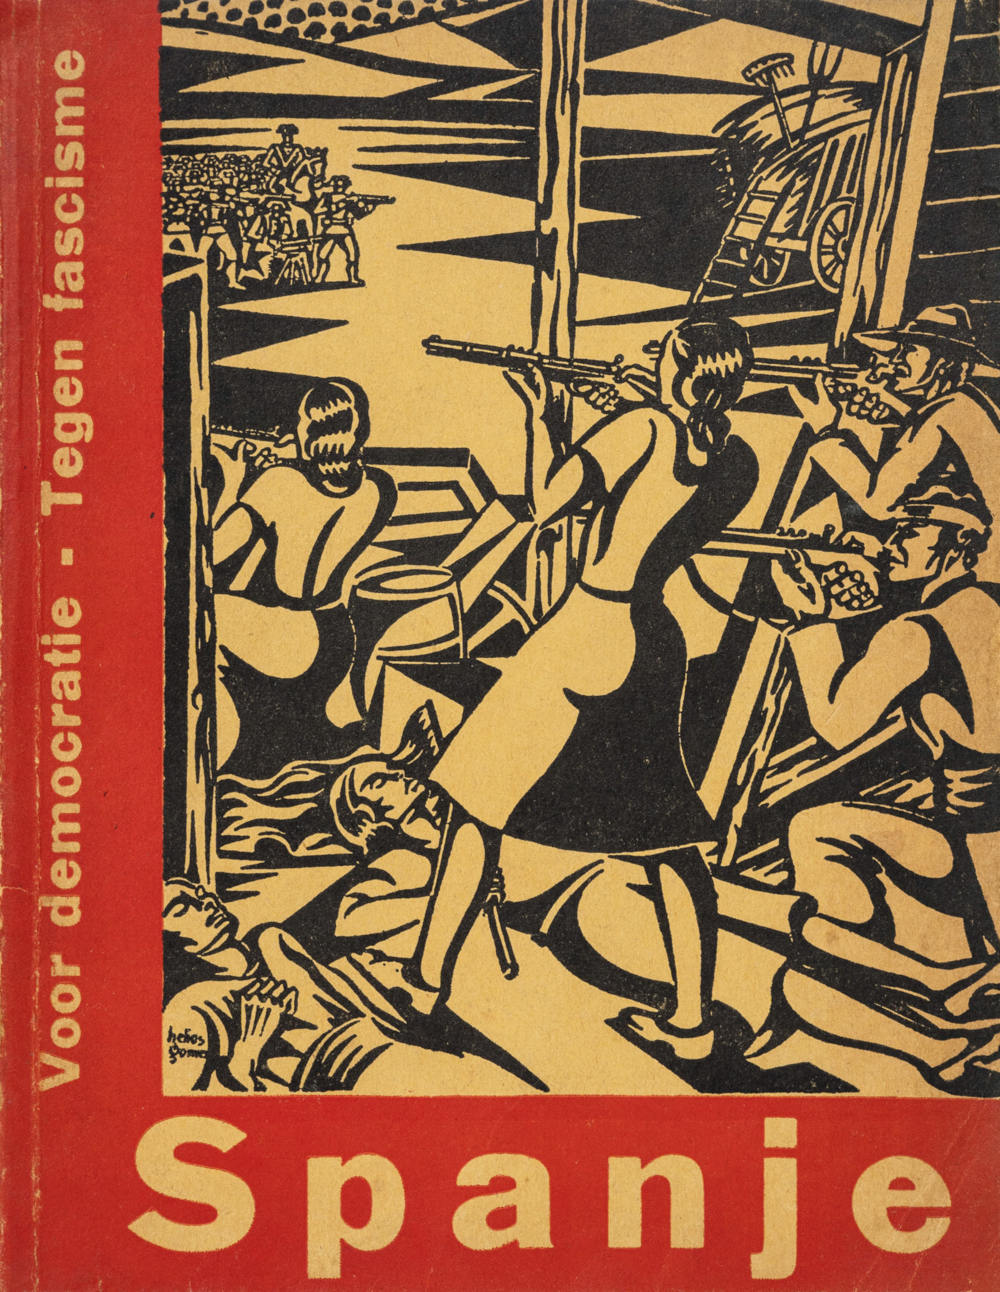 J. Bladergroen, «Spanje. Een volk vecht voor zijn vrijheid», Fundament, núm. 8 (Amsterdam, 1937)